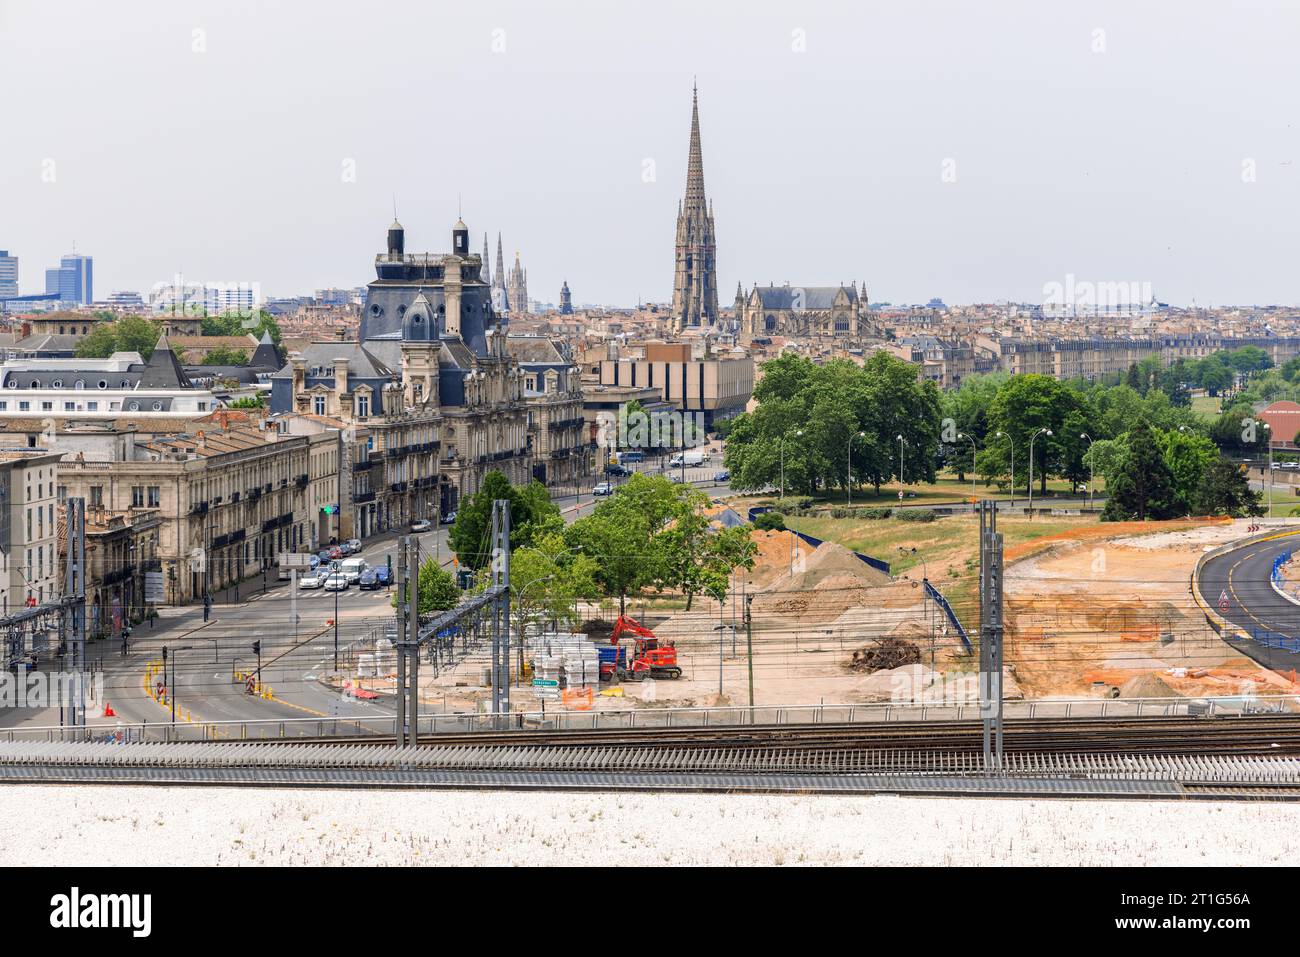 Vue sur la ville française de Bordeaux depuis l'ancien quartier portuaire, montrant les voies ferrées, la vieille ville et la flèche de la cathédrale. Banque D'Images